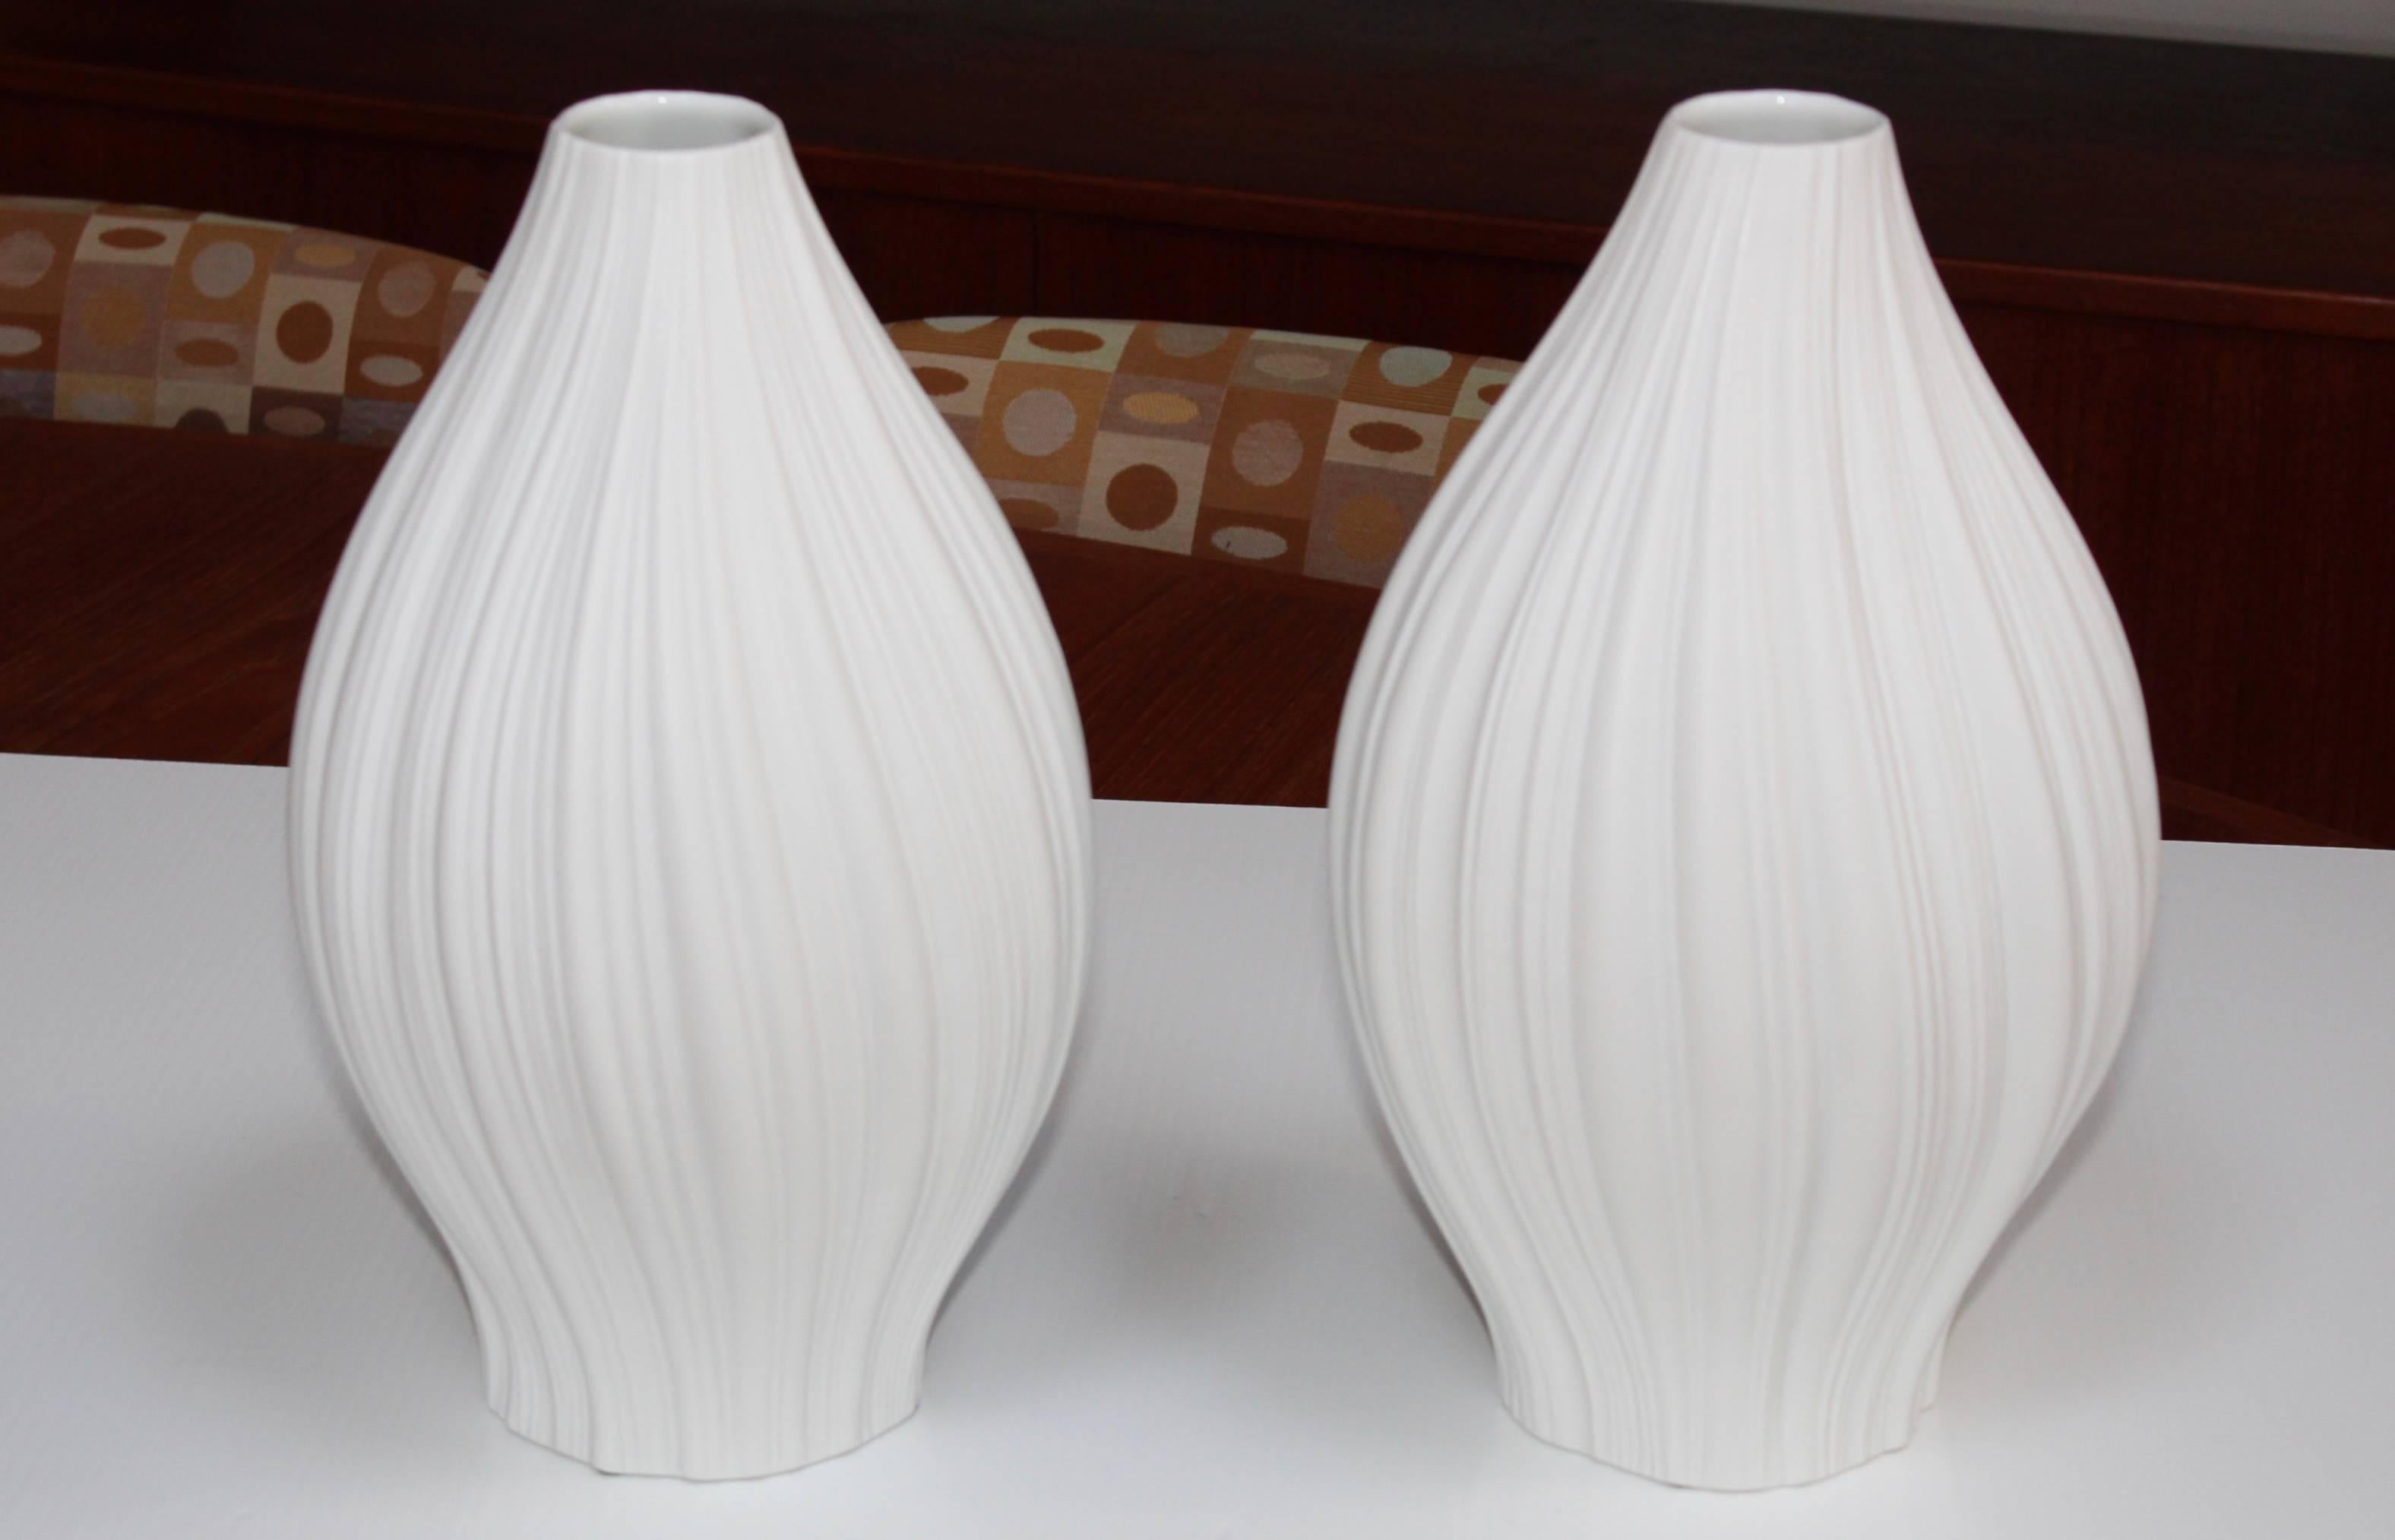 1960s Martin Freyer for Rosenthal large porcelain vases.